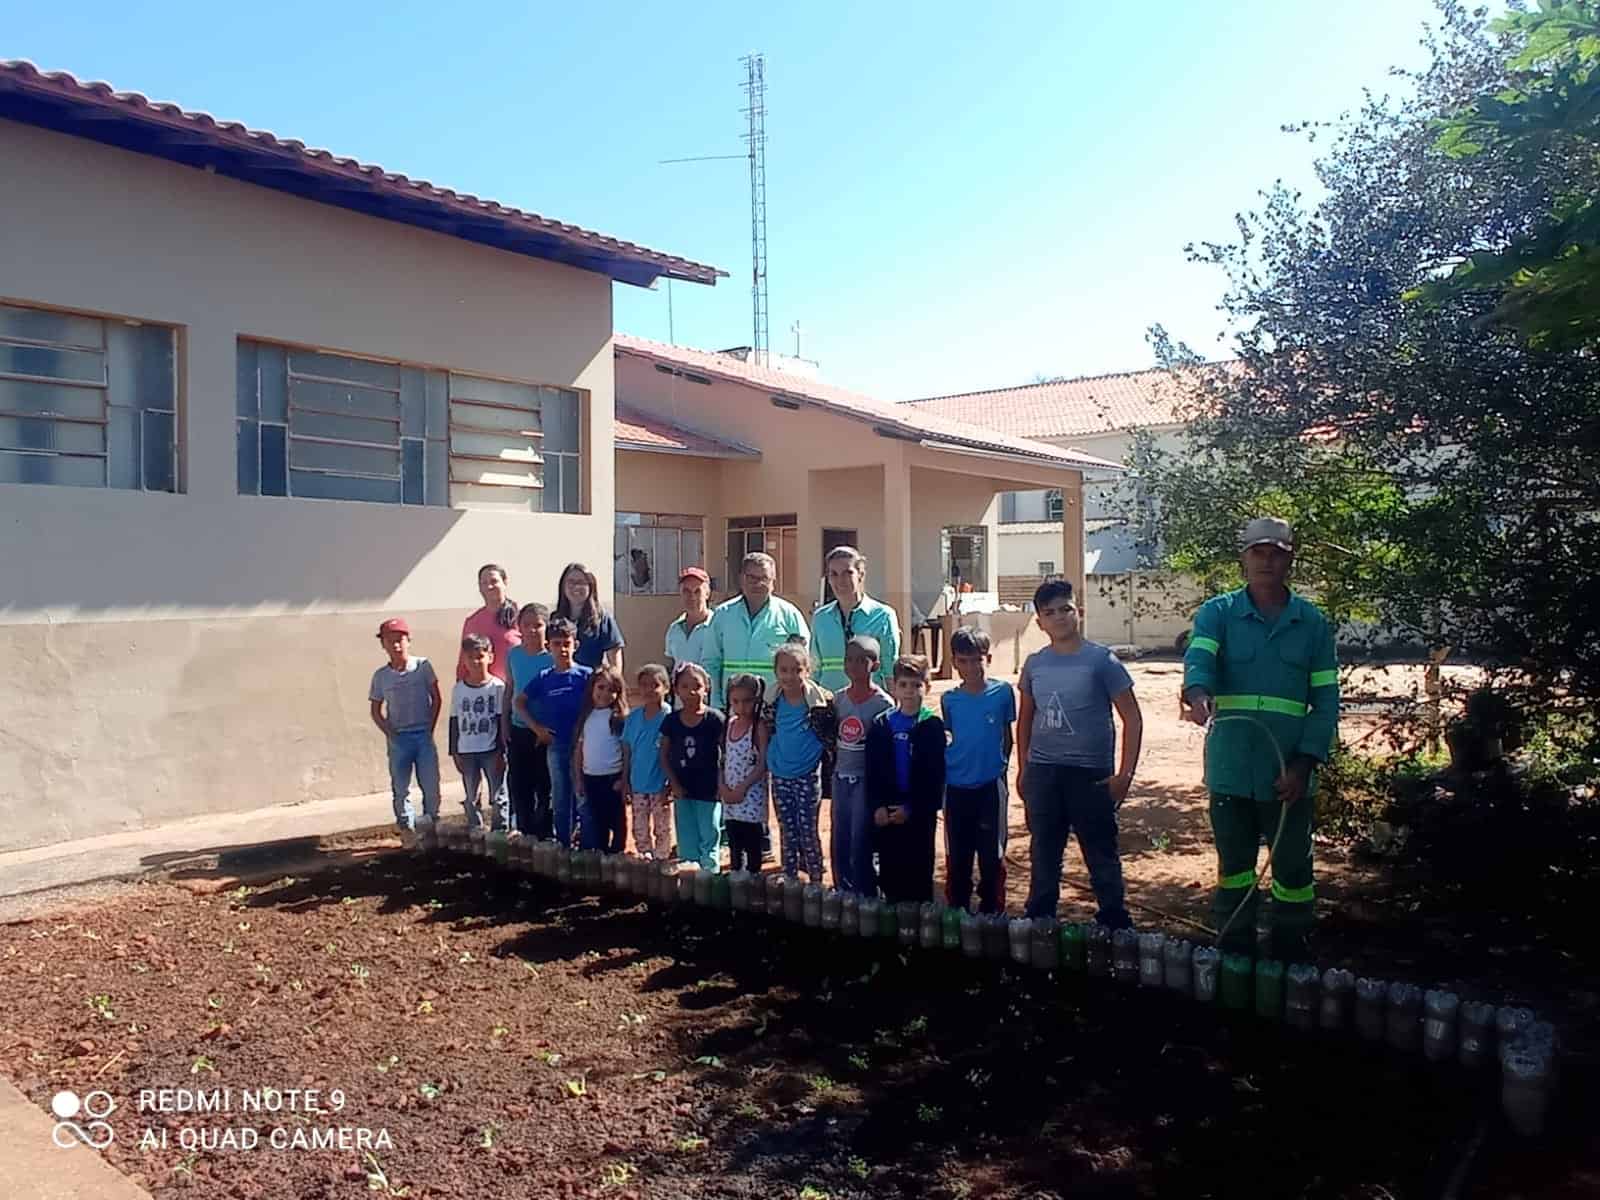 Processo De Implantação Da Horta Na Escola Municipal Altino Ferreira Através Da Ação “Plantando Meu Próprio Alimento” Do Programa De Educação Ambiental (Pea) Da Verde. 